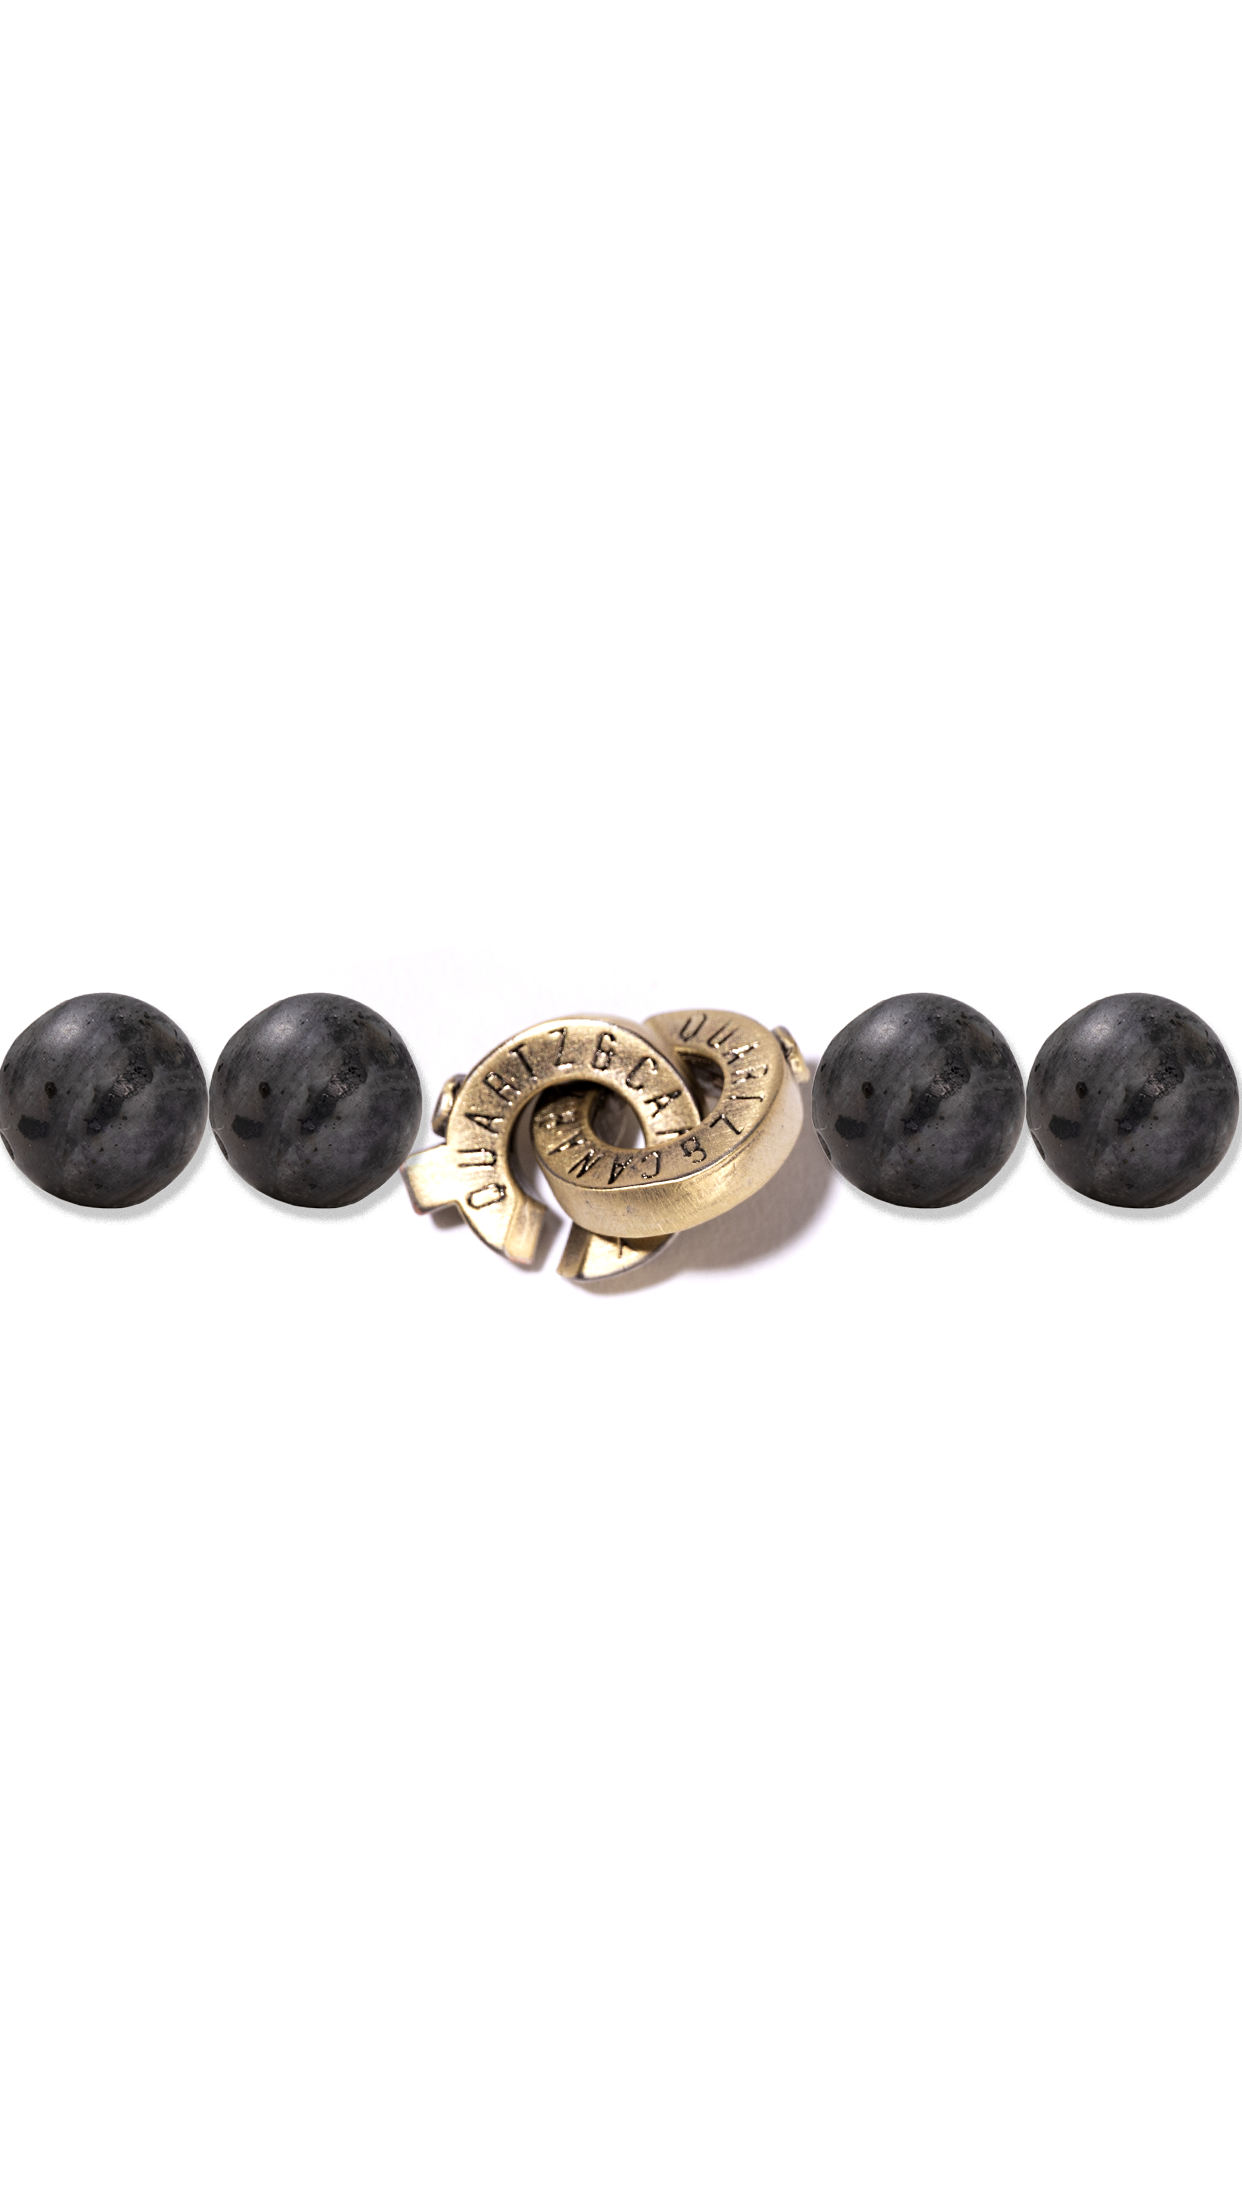 Q&C Connected Clasp Bracelet (10mm stones)